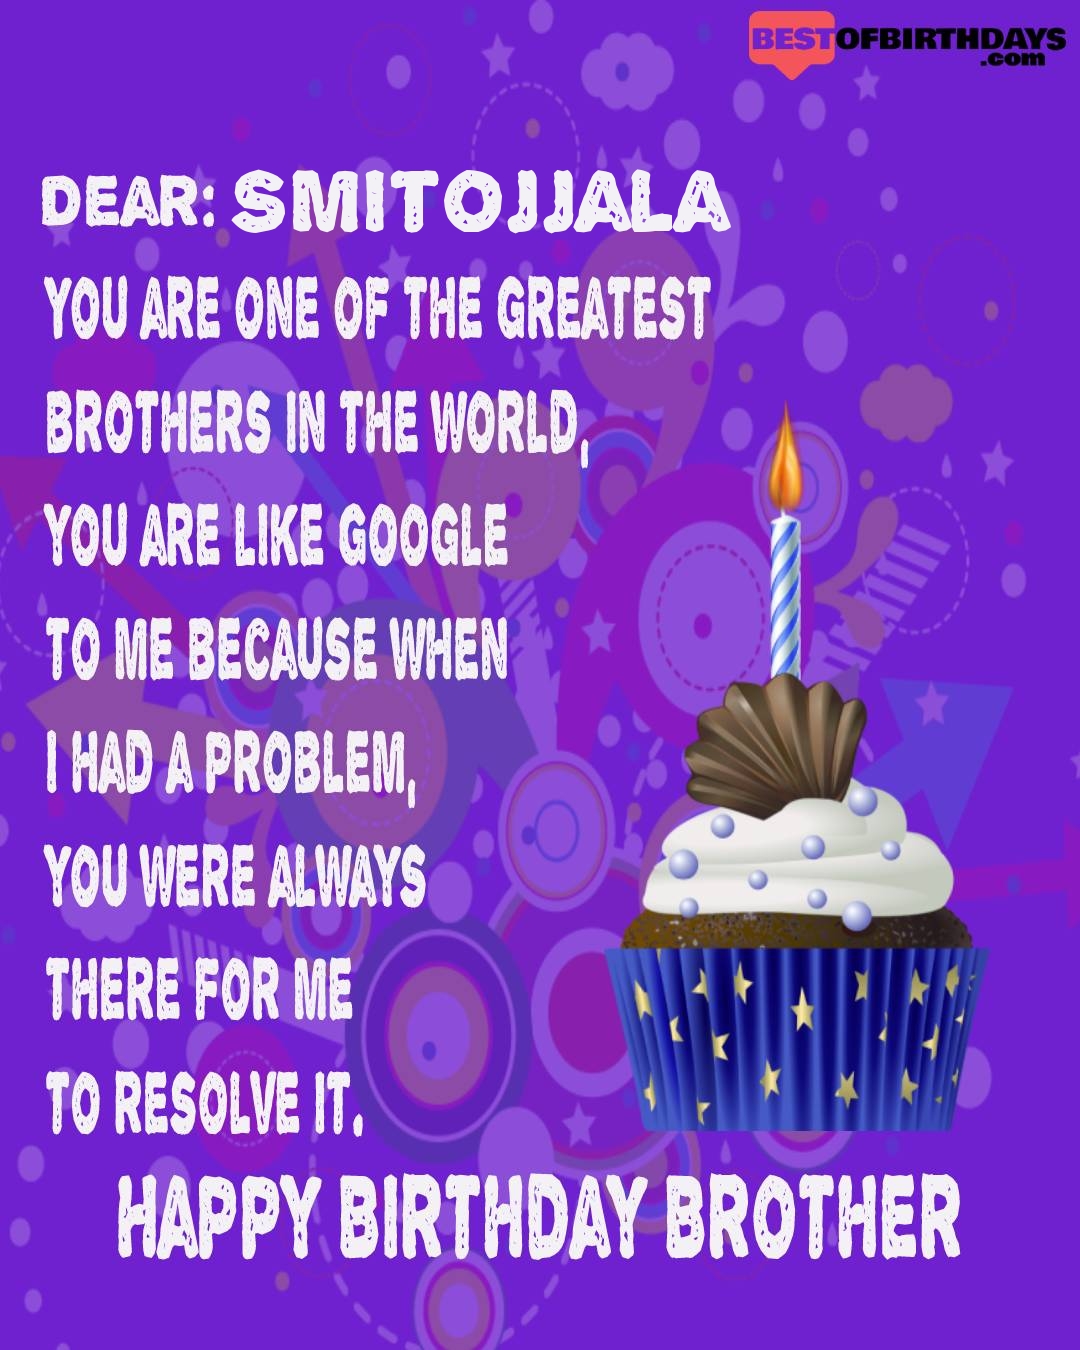 Happy birthday smitojjala bhai brother bro